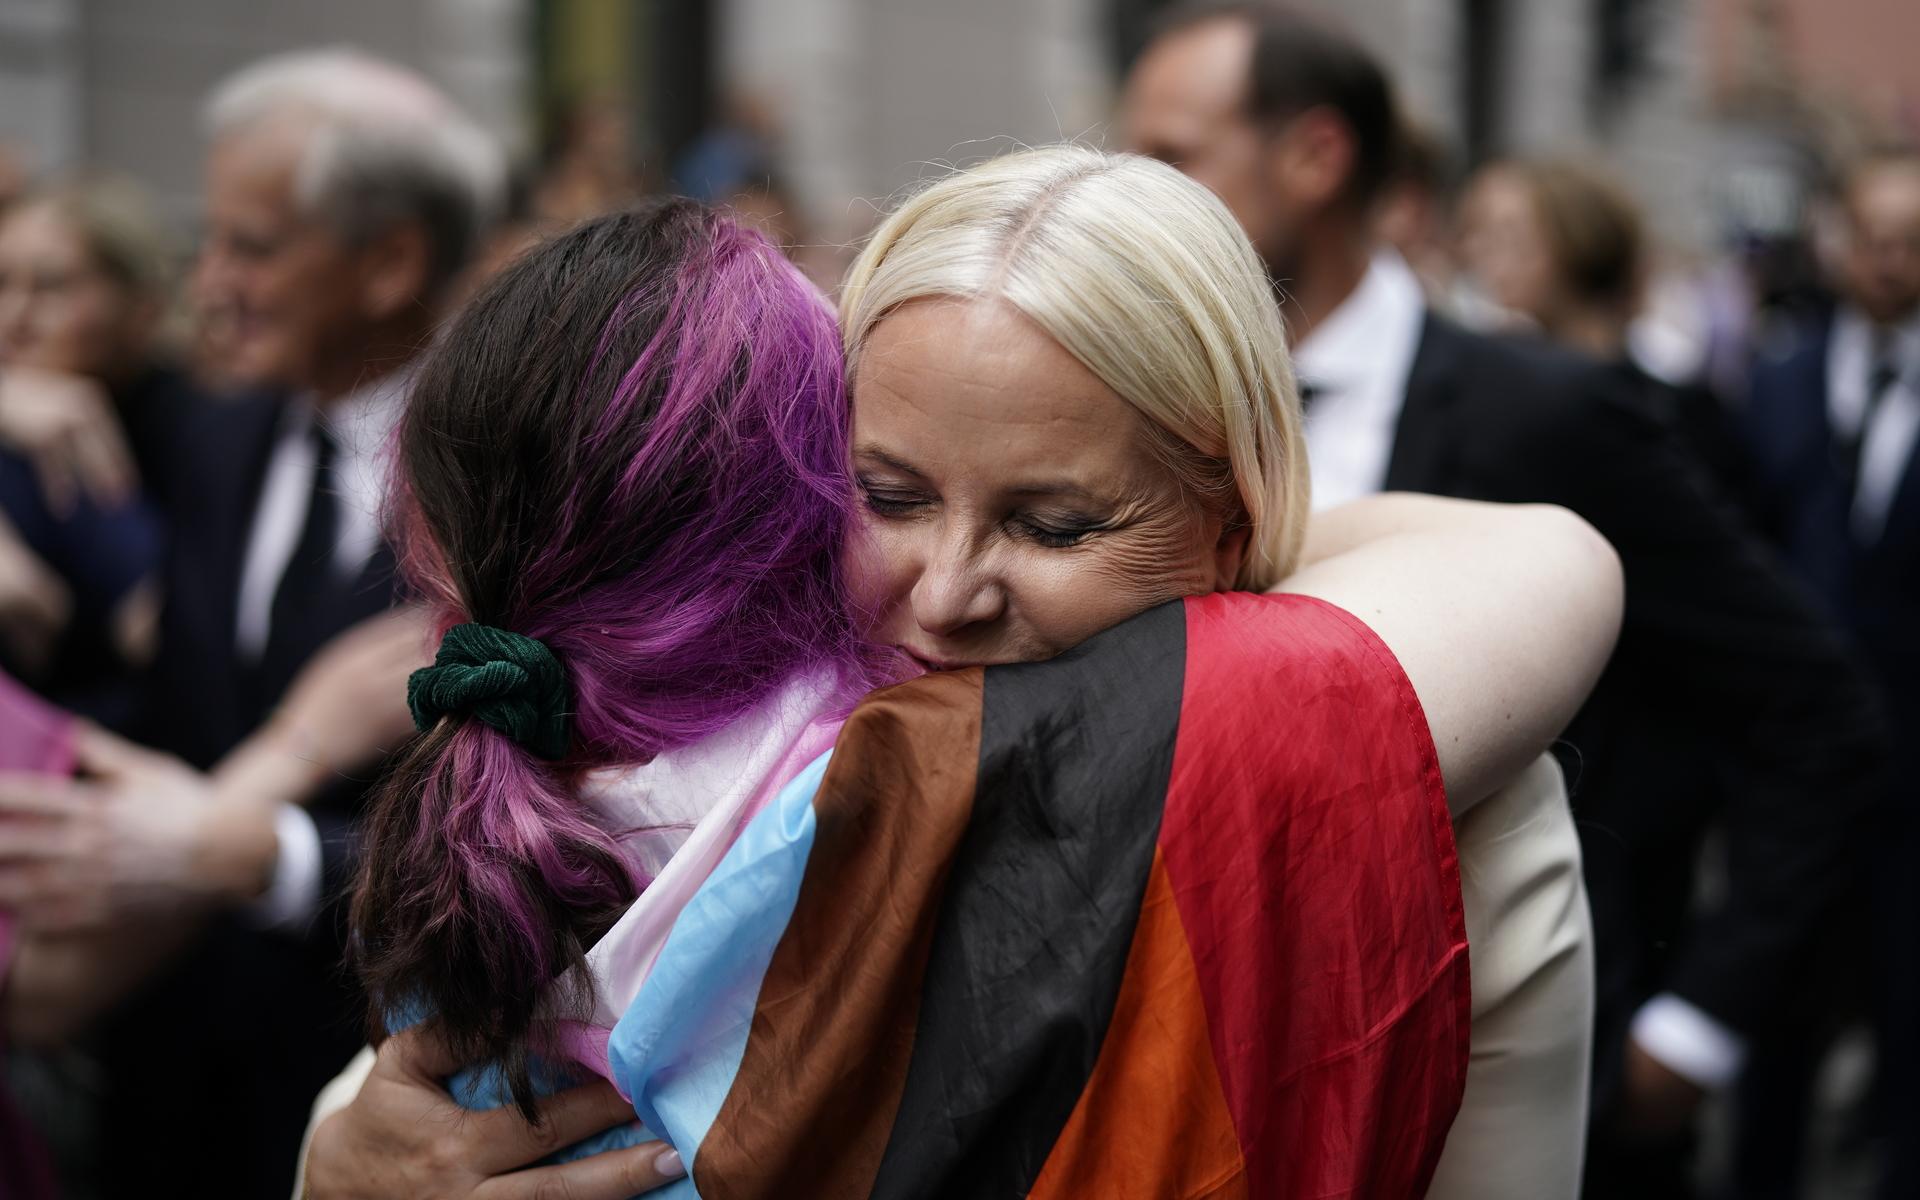 Kronprinsessan Mette-Marit kramar om en person på platsen där människor har samlats efter terrordådet.